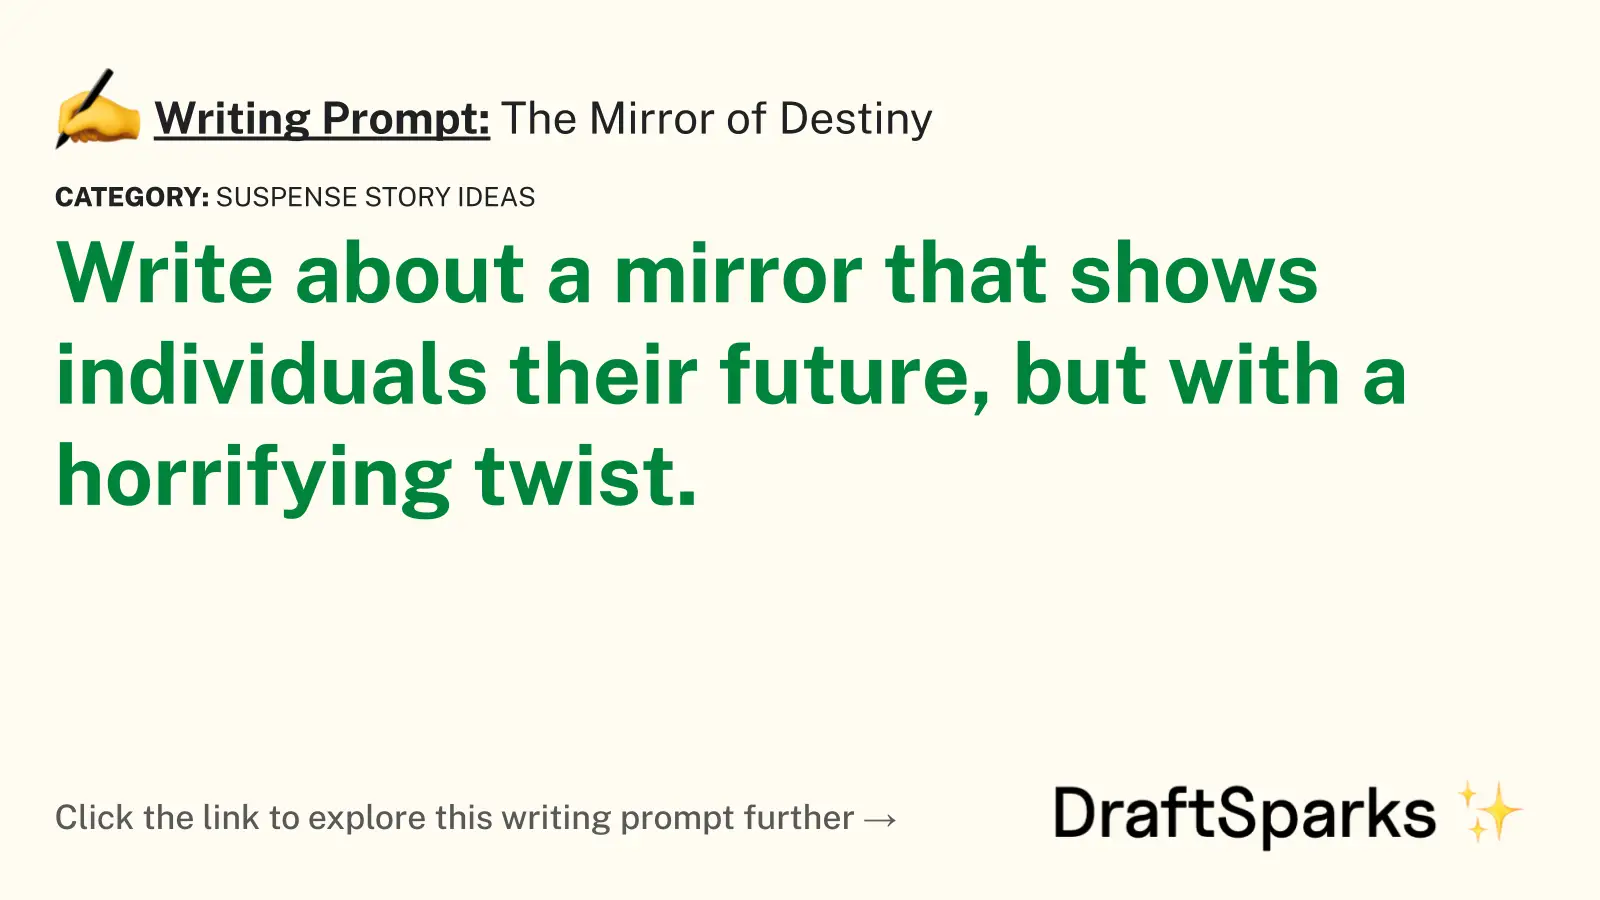 The Mirror of Destiny